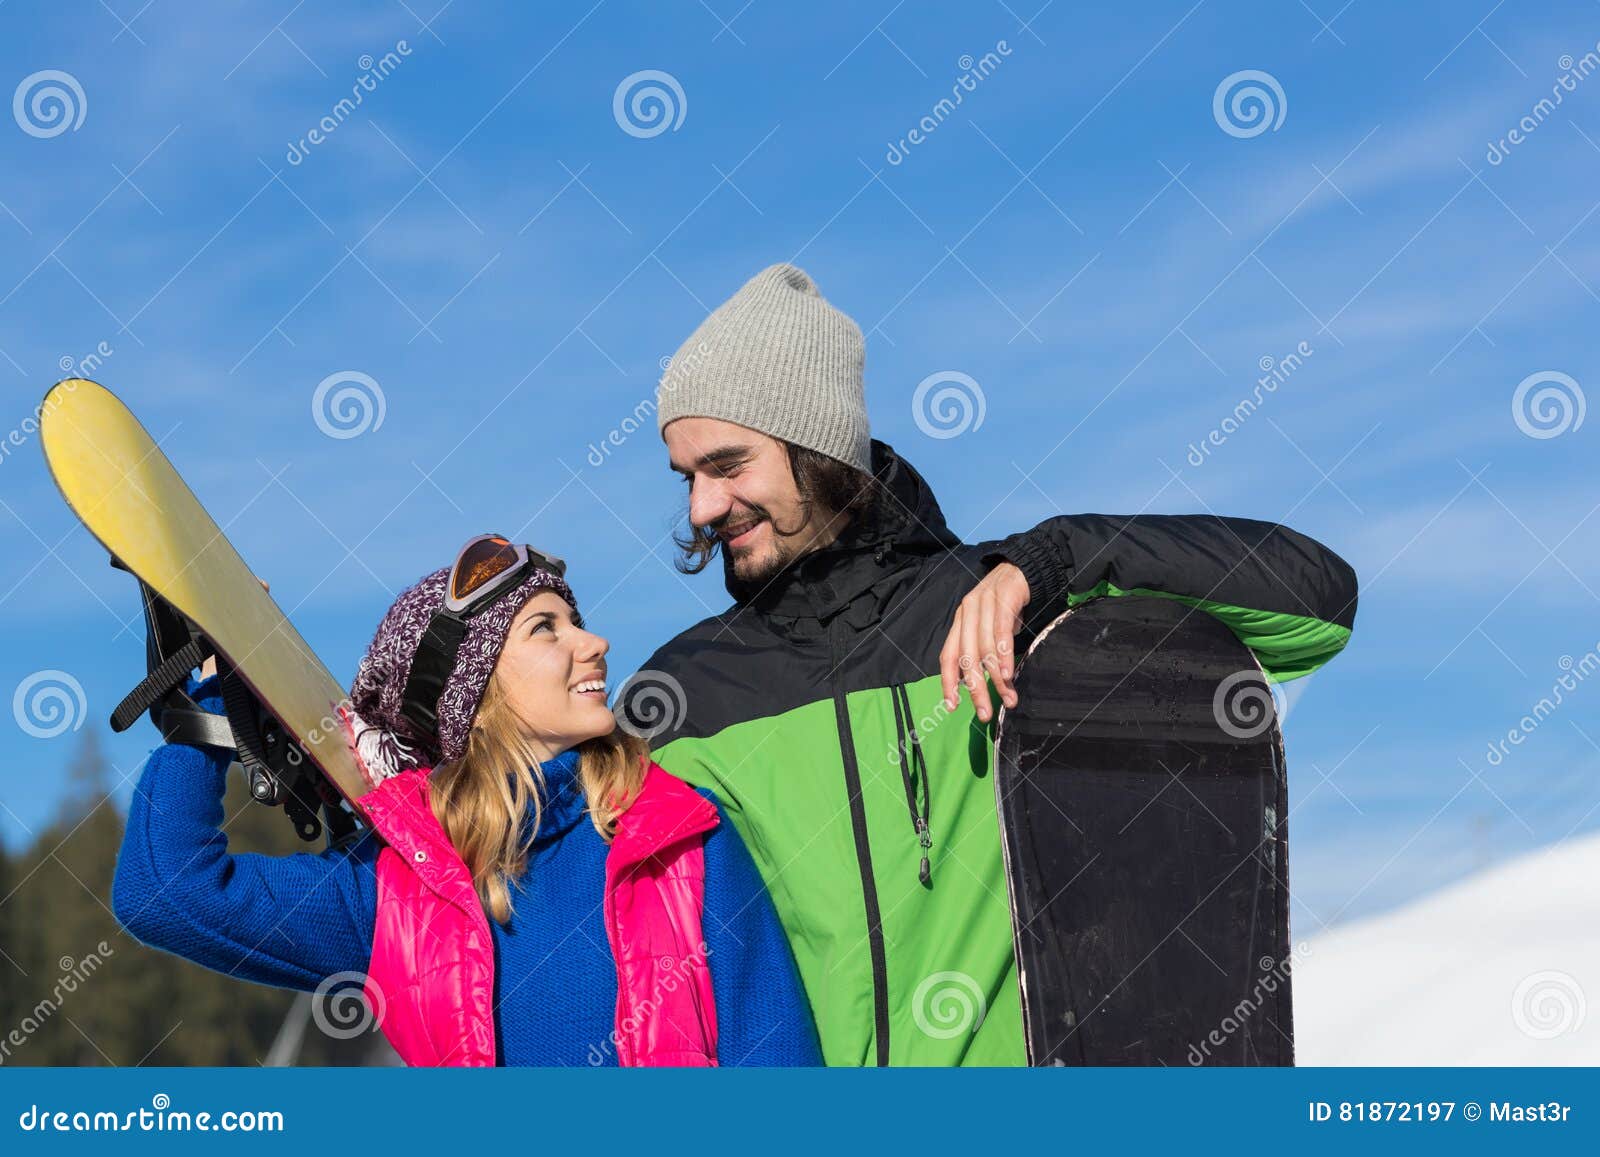 Snowboarddatierung